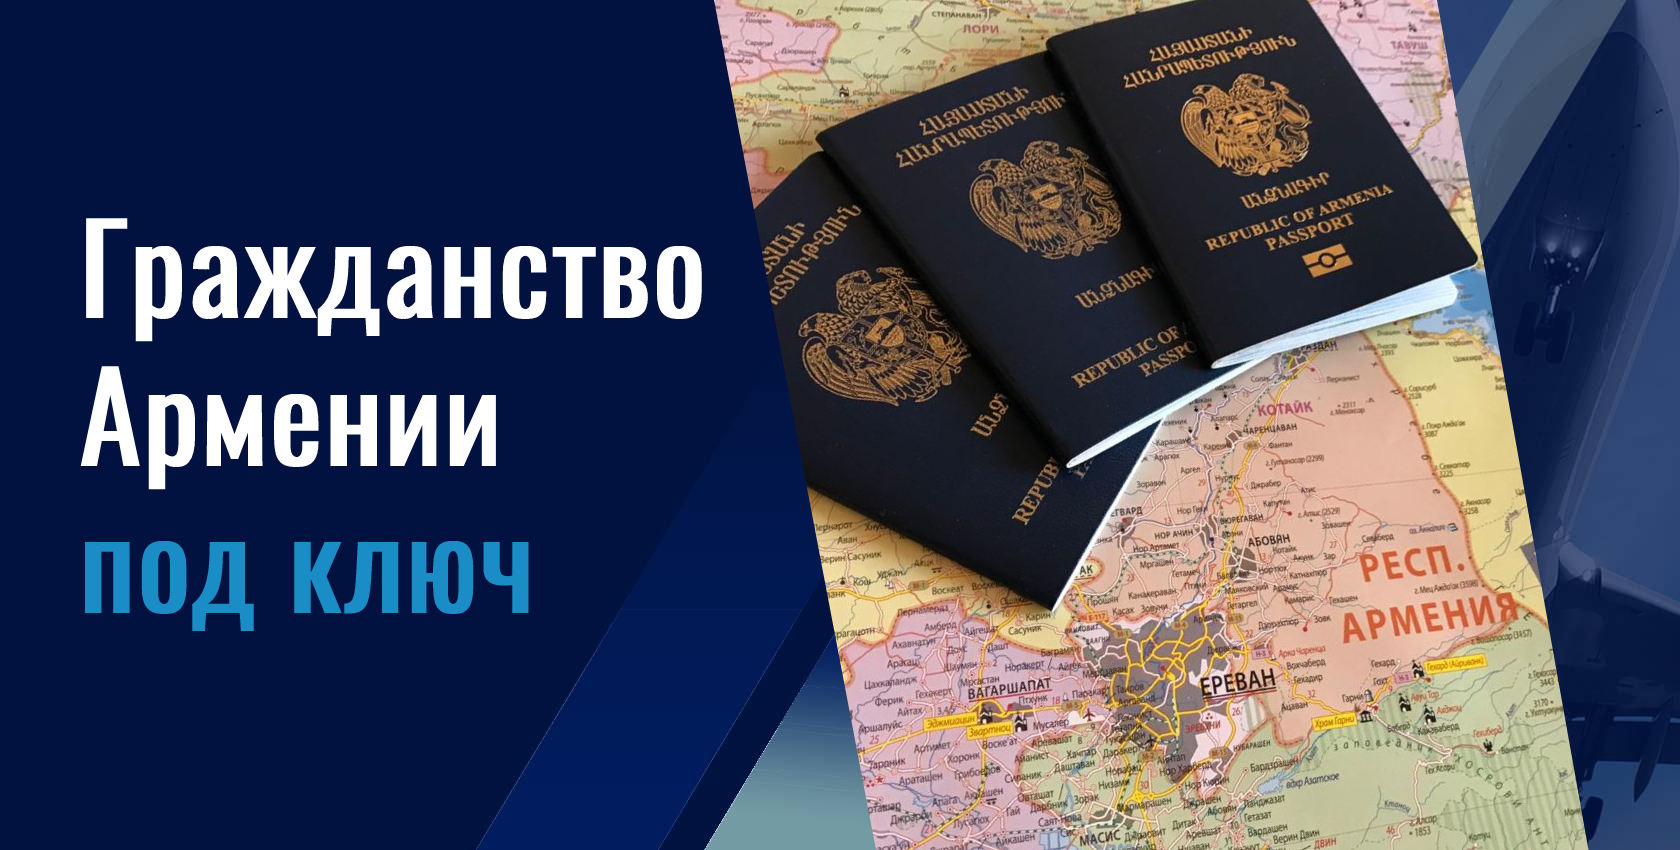 Получение гражданства рф для граждан армении 2020: общий и упрощенный порядок оформления